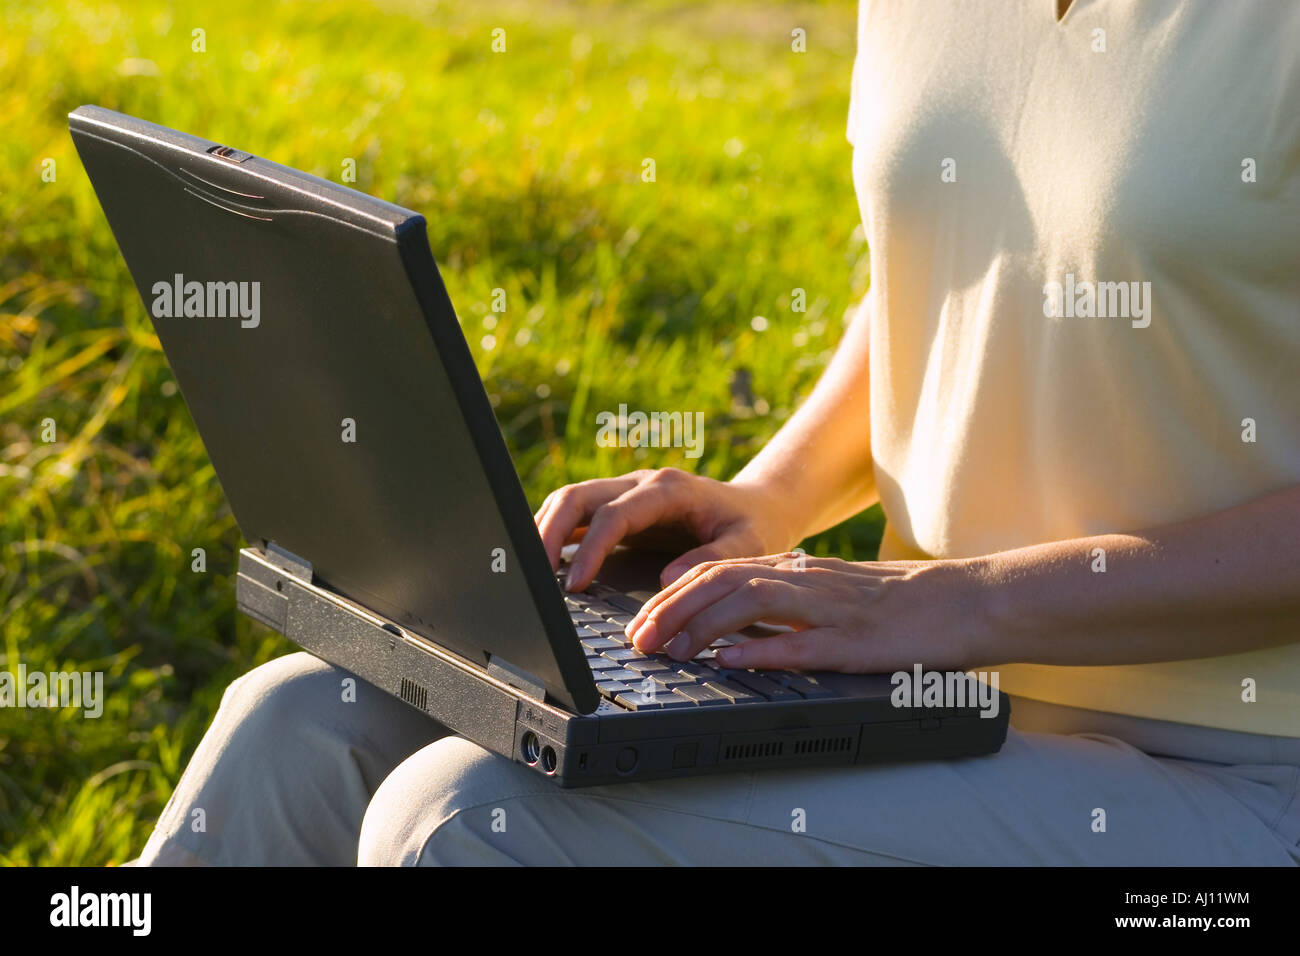 Femme de la saisie sur un ordinateur portable dans un pré vert Banque D'Images